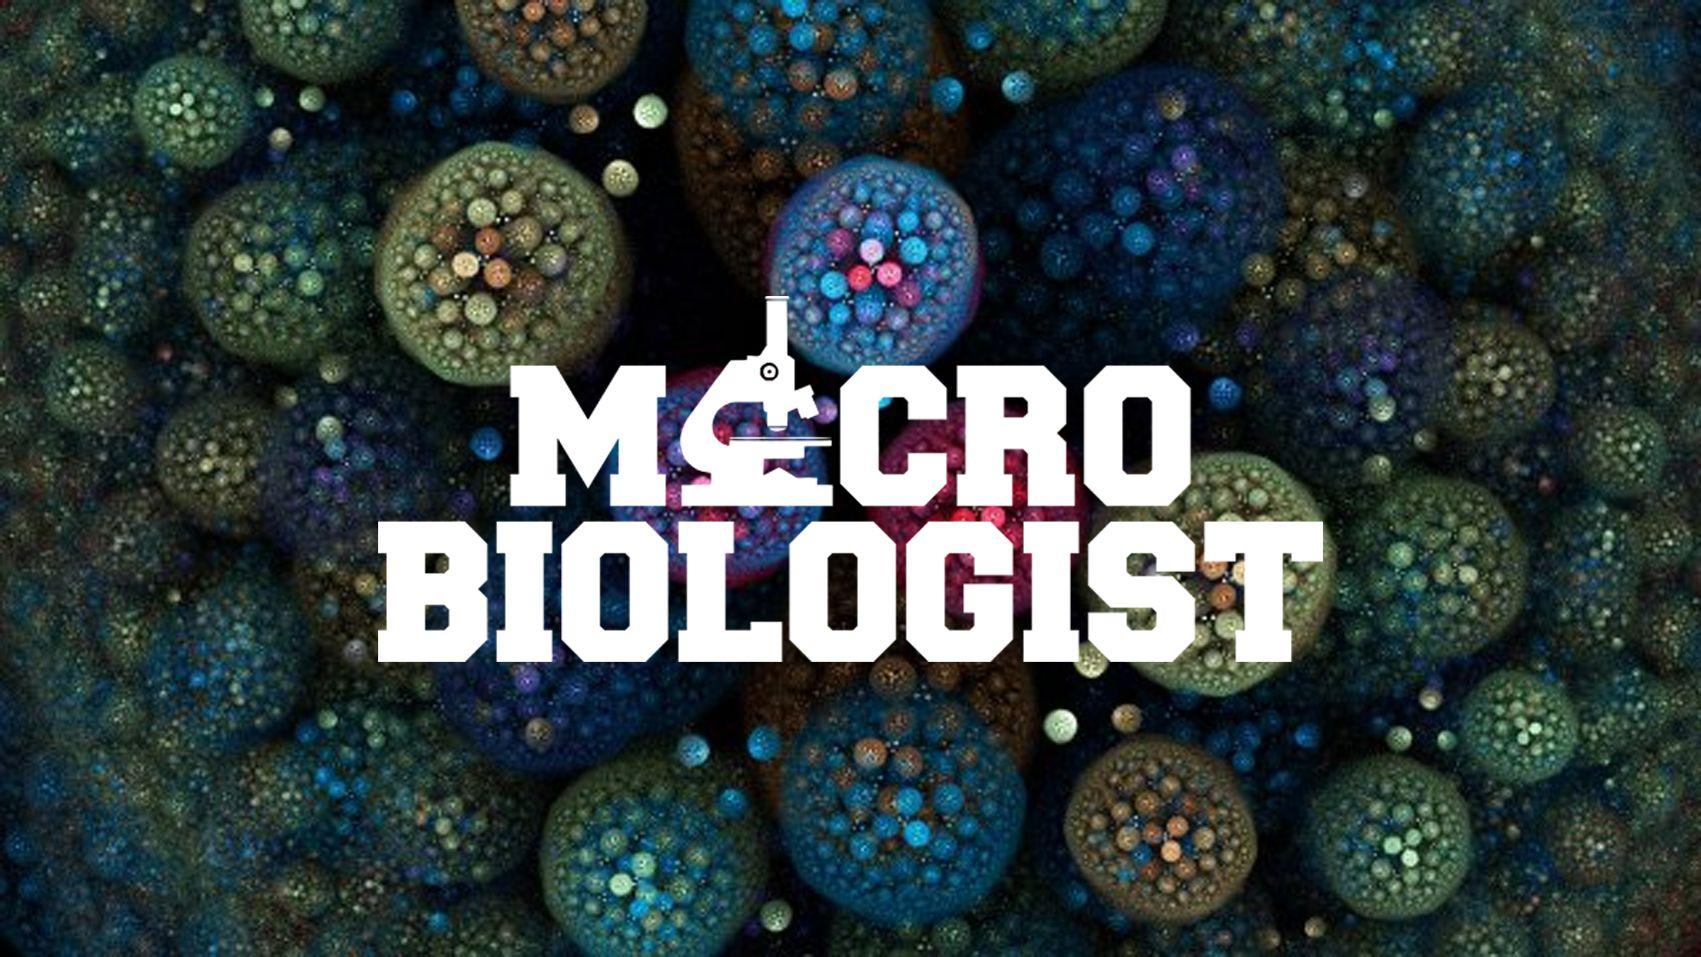 Microbiologist Wallpaper. Shirt print design, Microbiology, Wallpaper